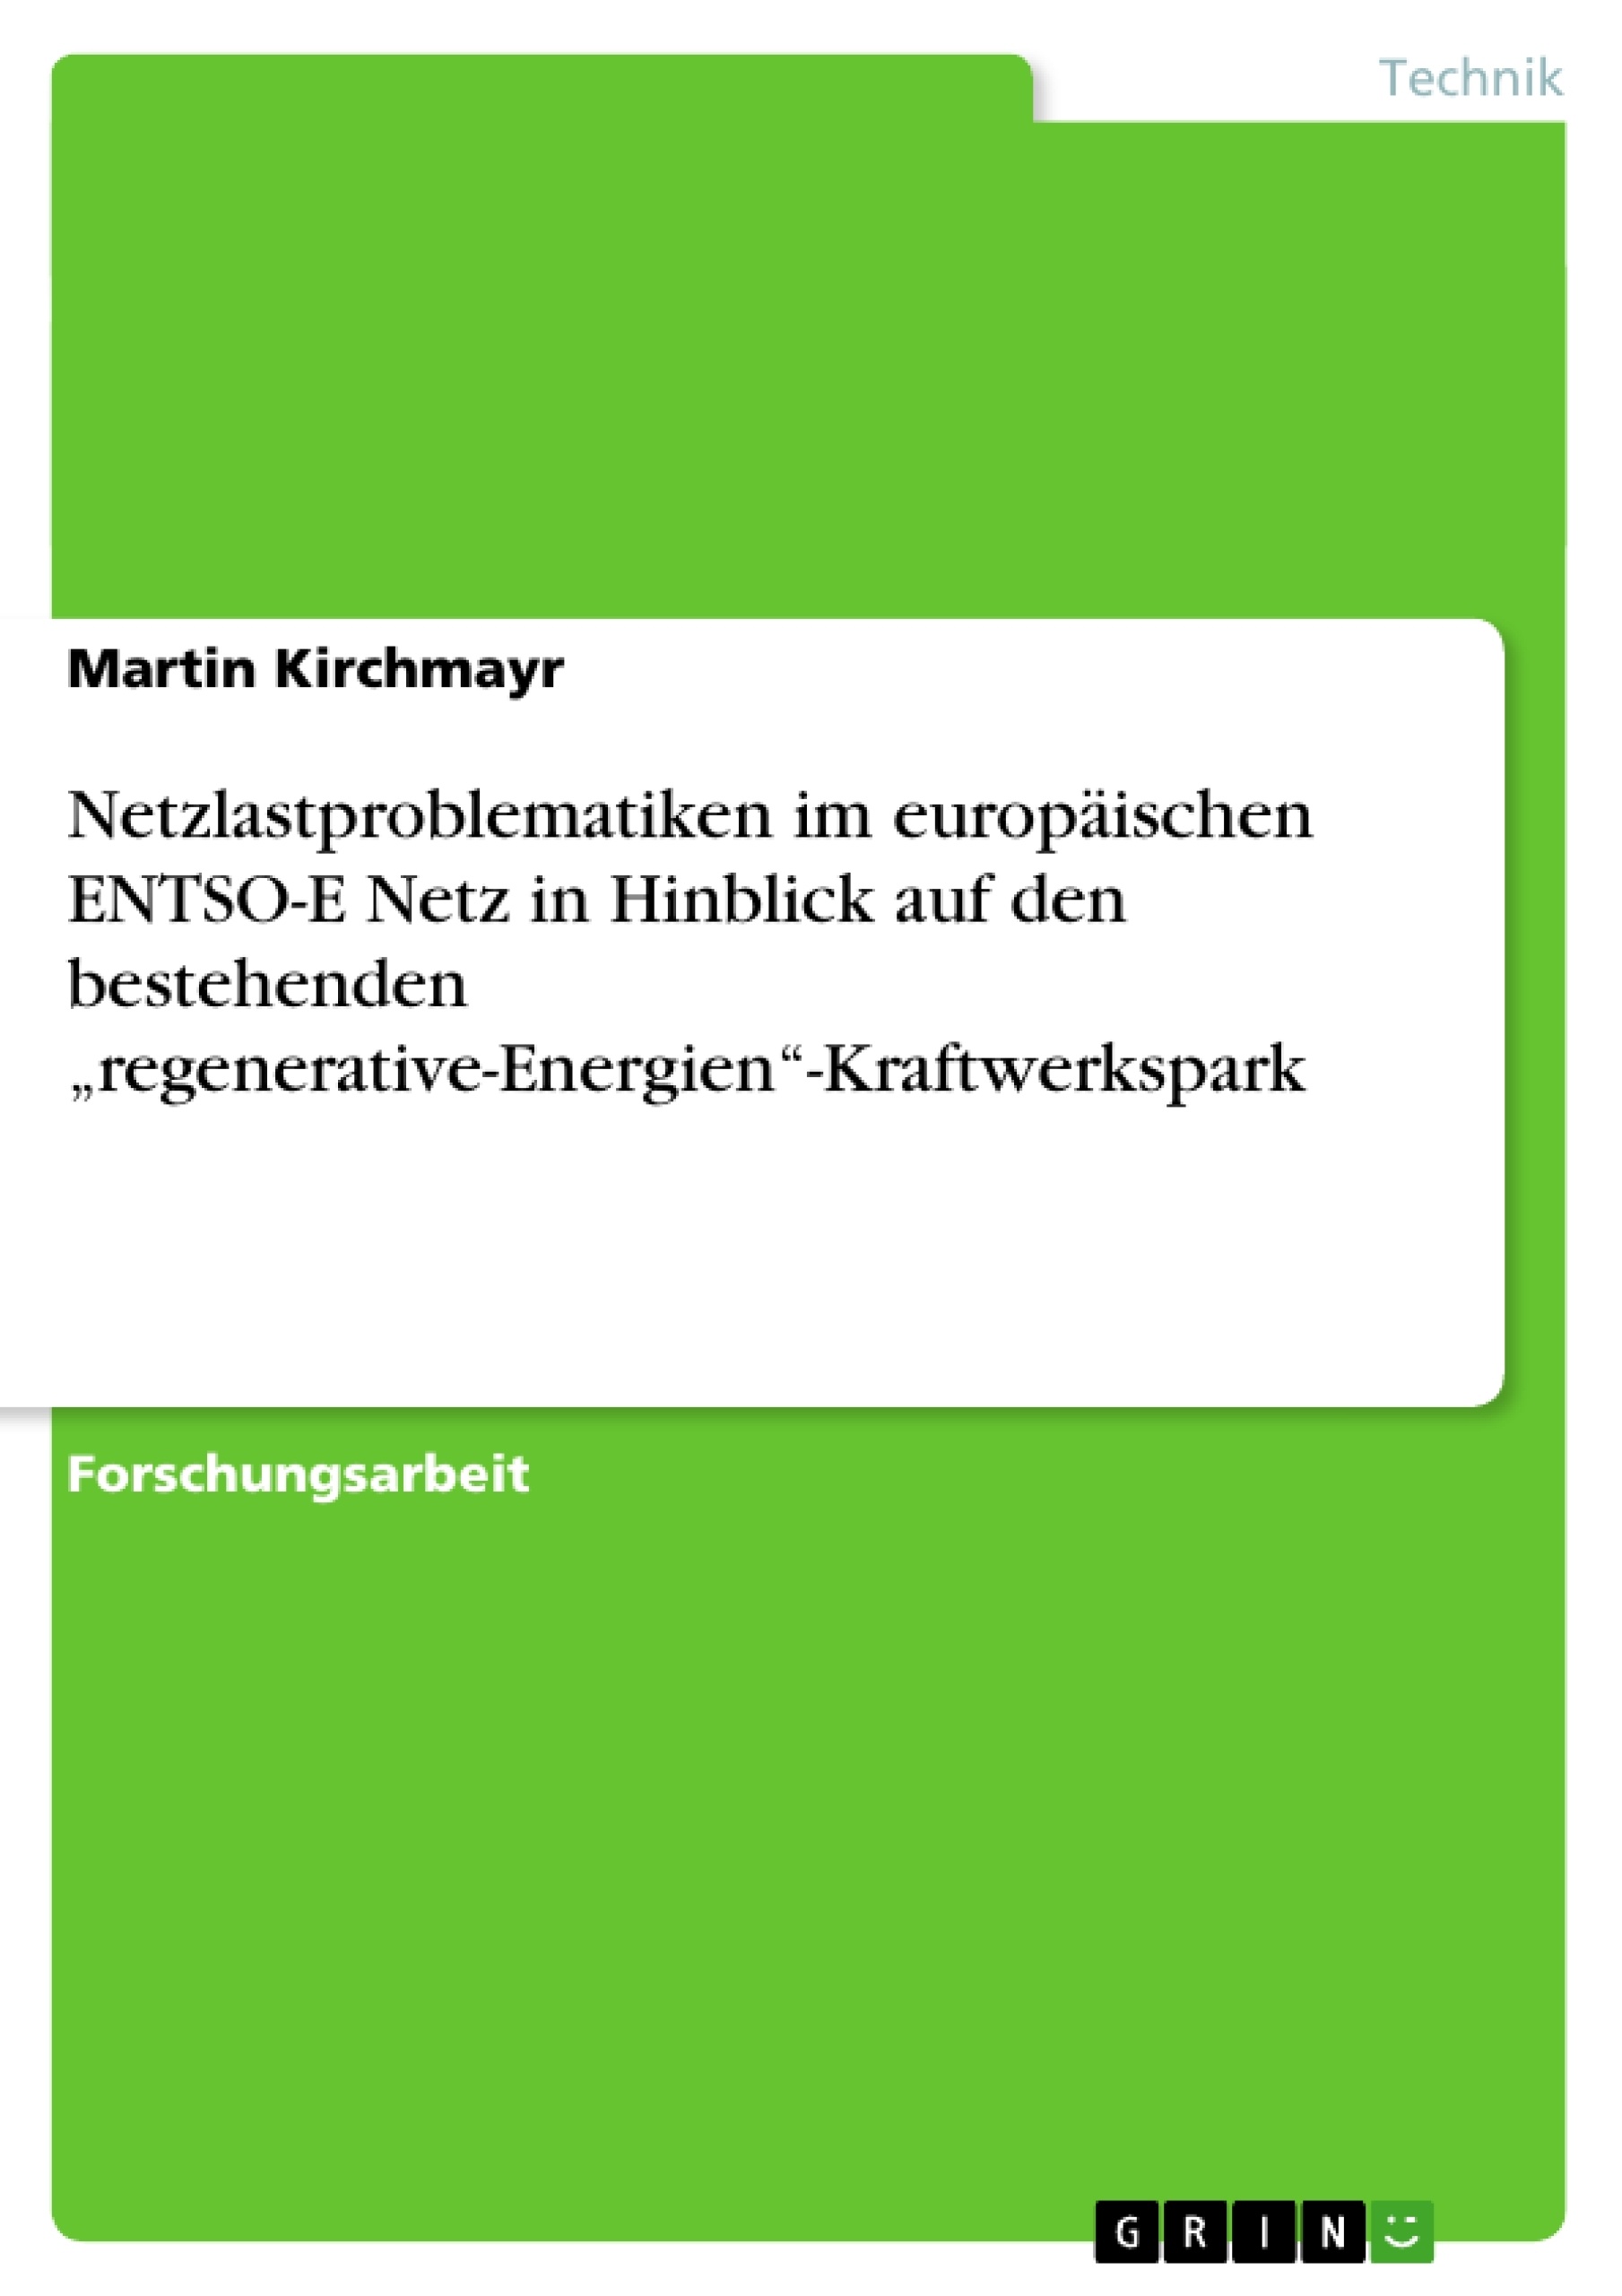 Titel: Netzlastproblematiken im europäischen ENTSO-E Netz in Hinblick auf den bestehenden „regenerative-Energien“-Kraftwerkspark